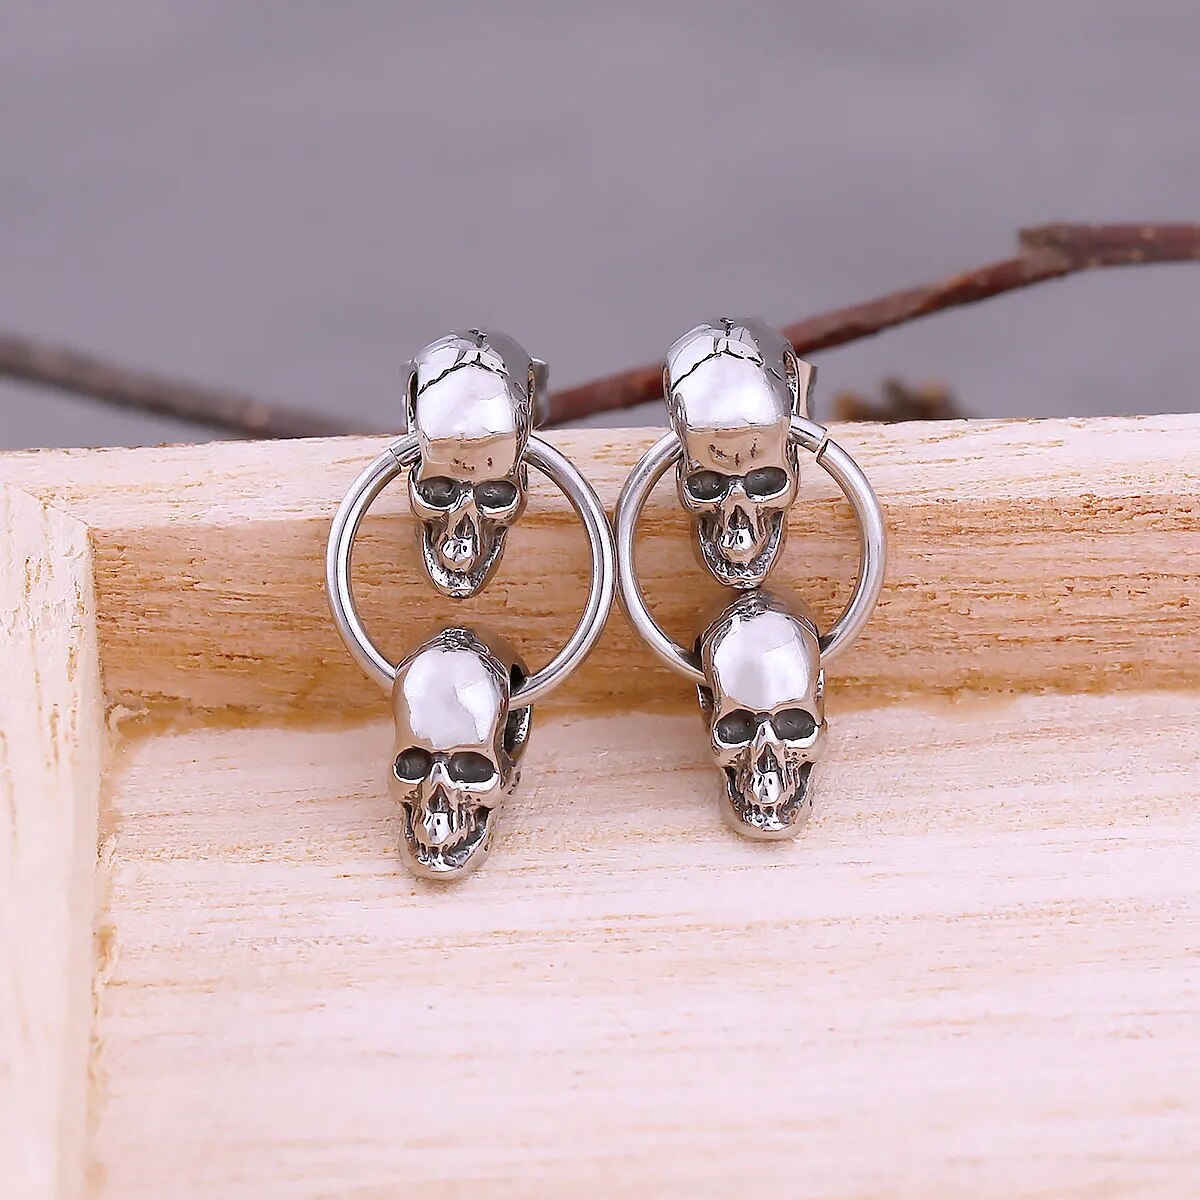 Neo-Gothic Double Skull Earrings - TripleViking